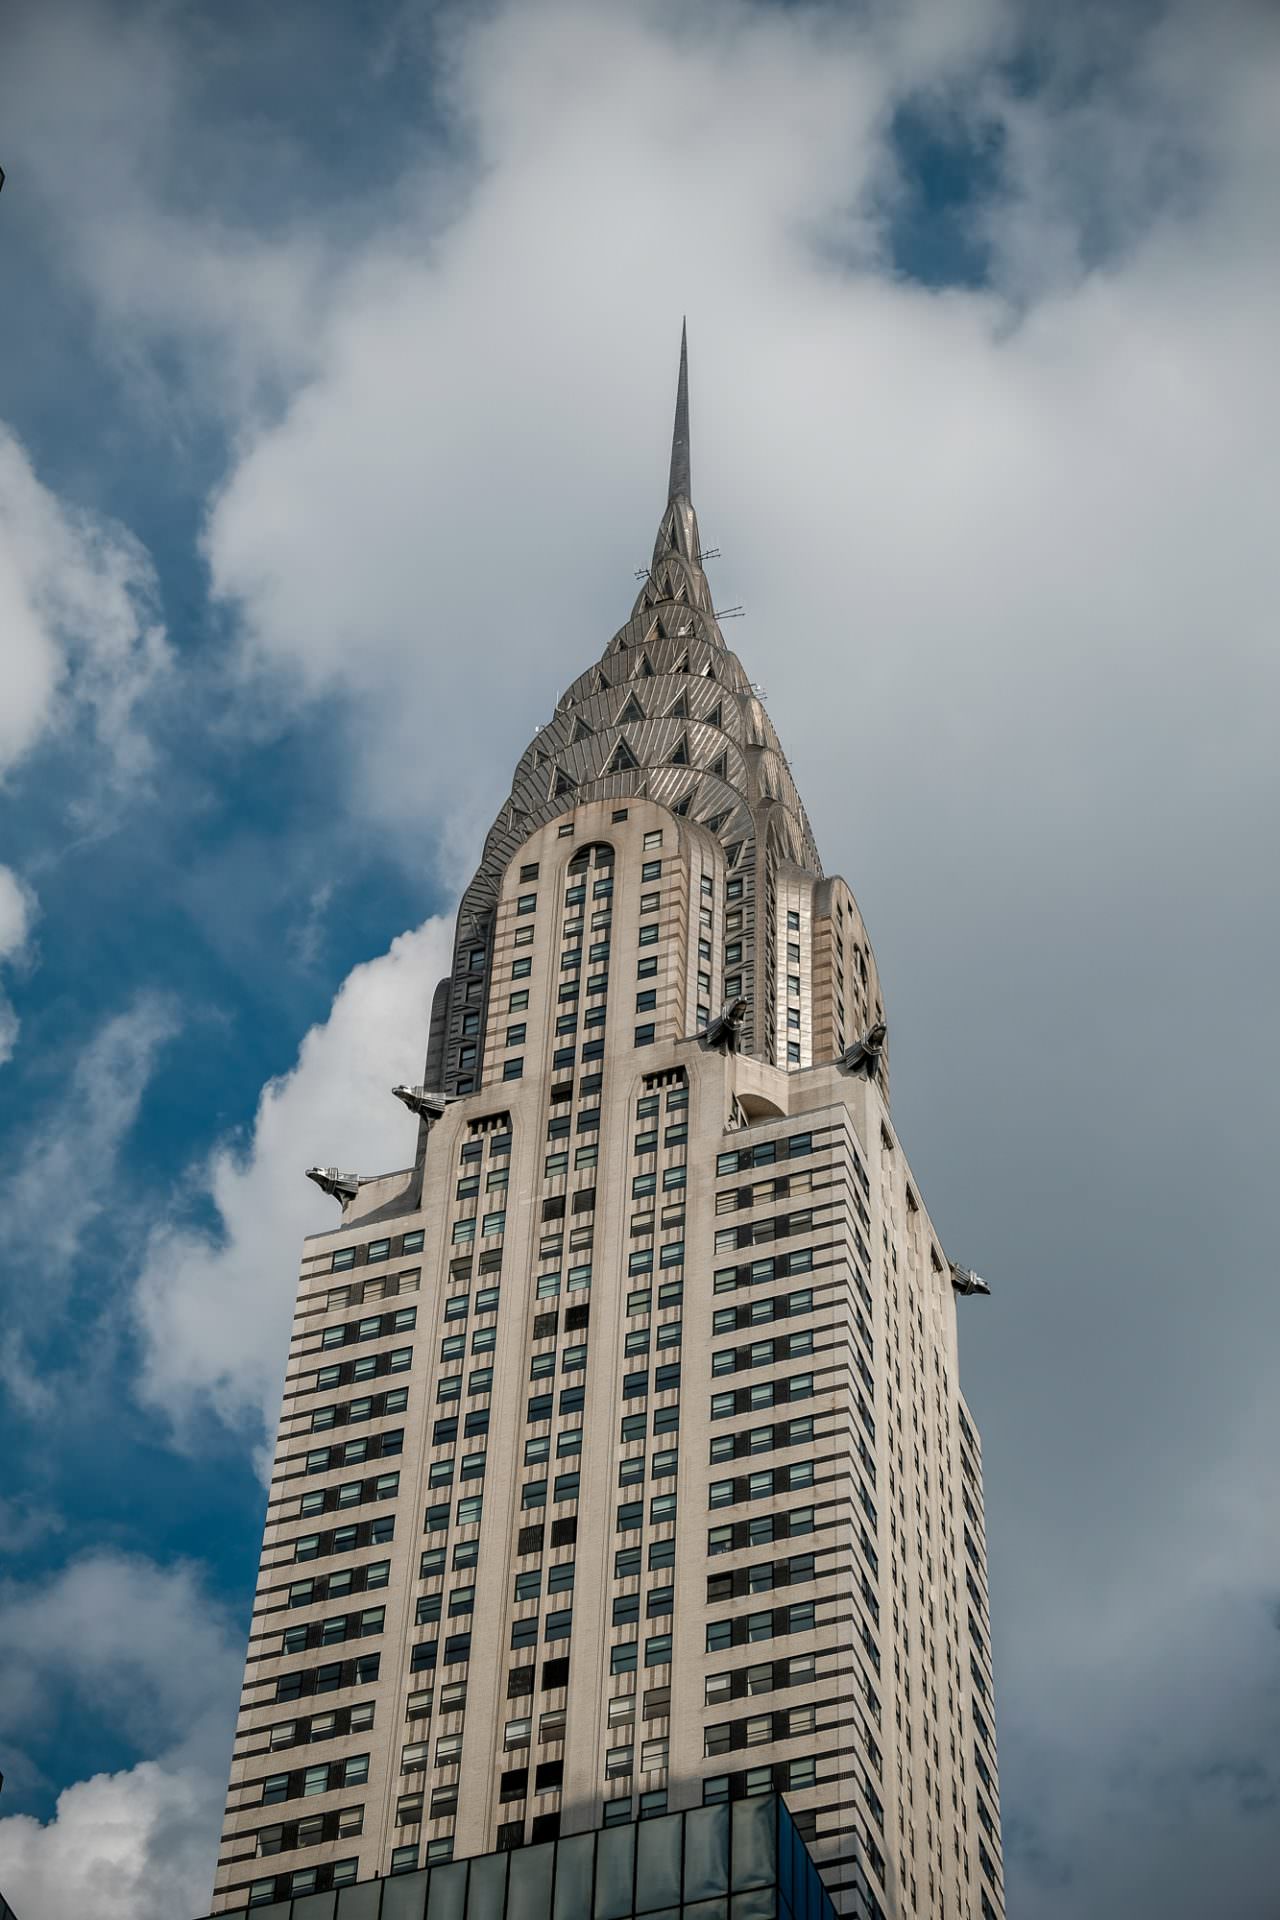 Chrysler building in New York City